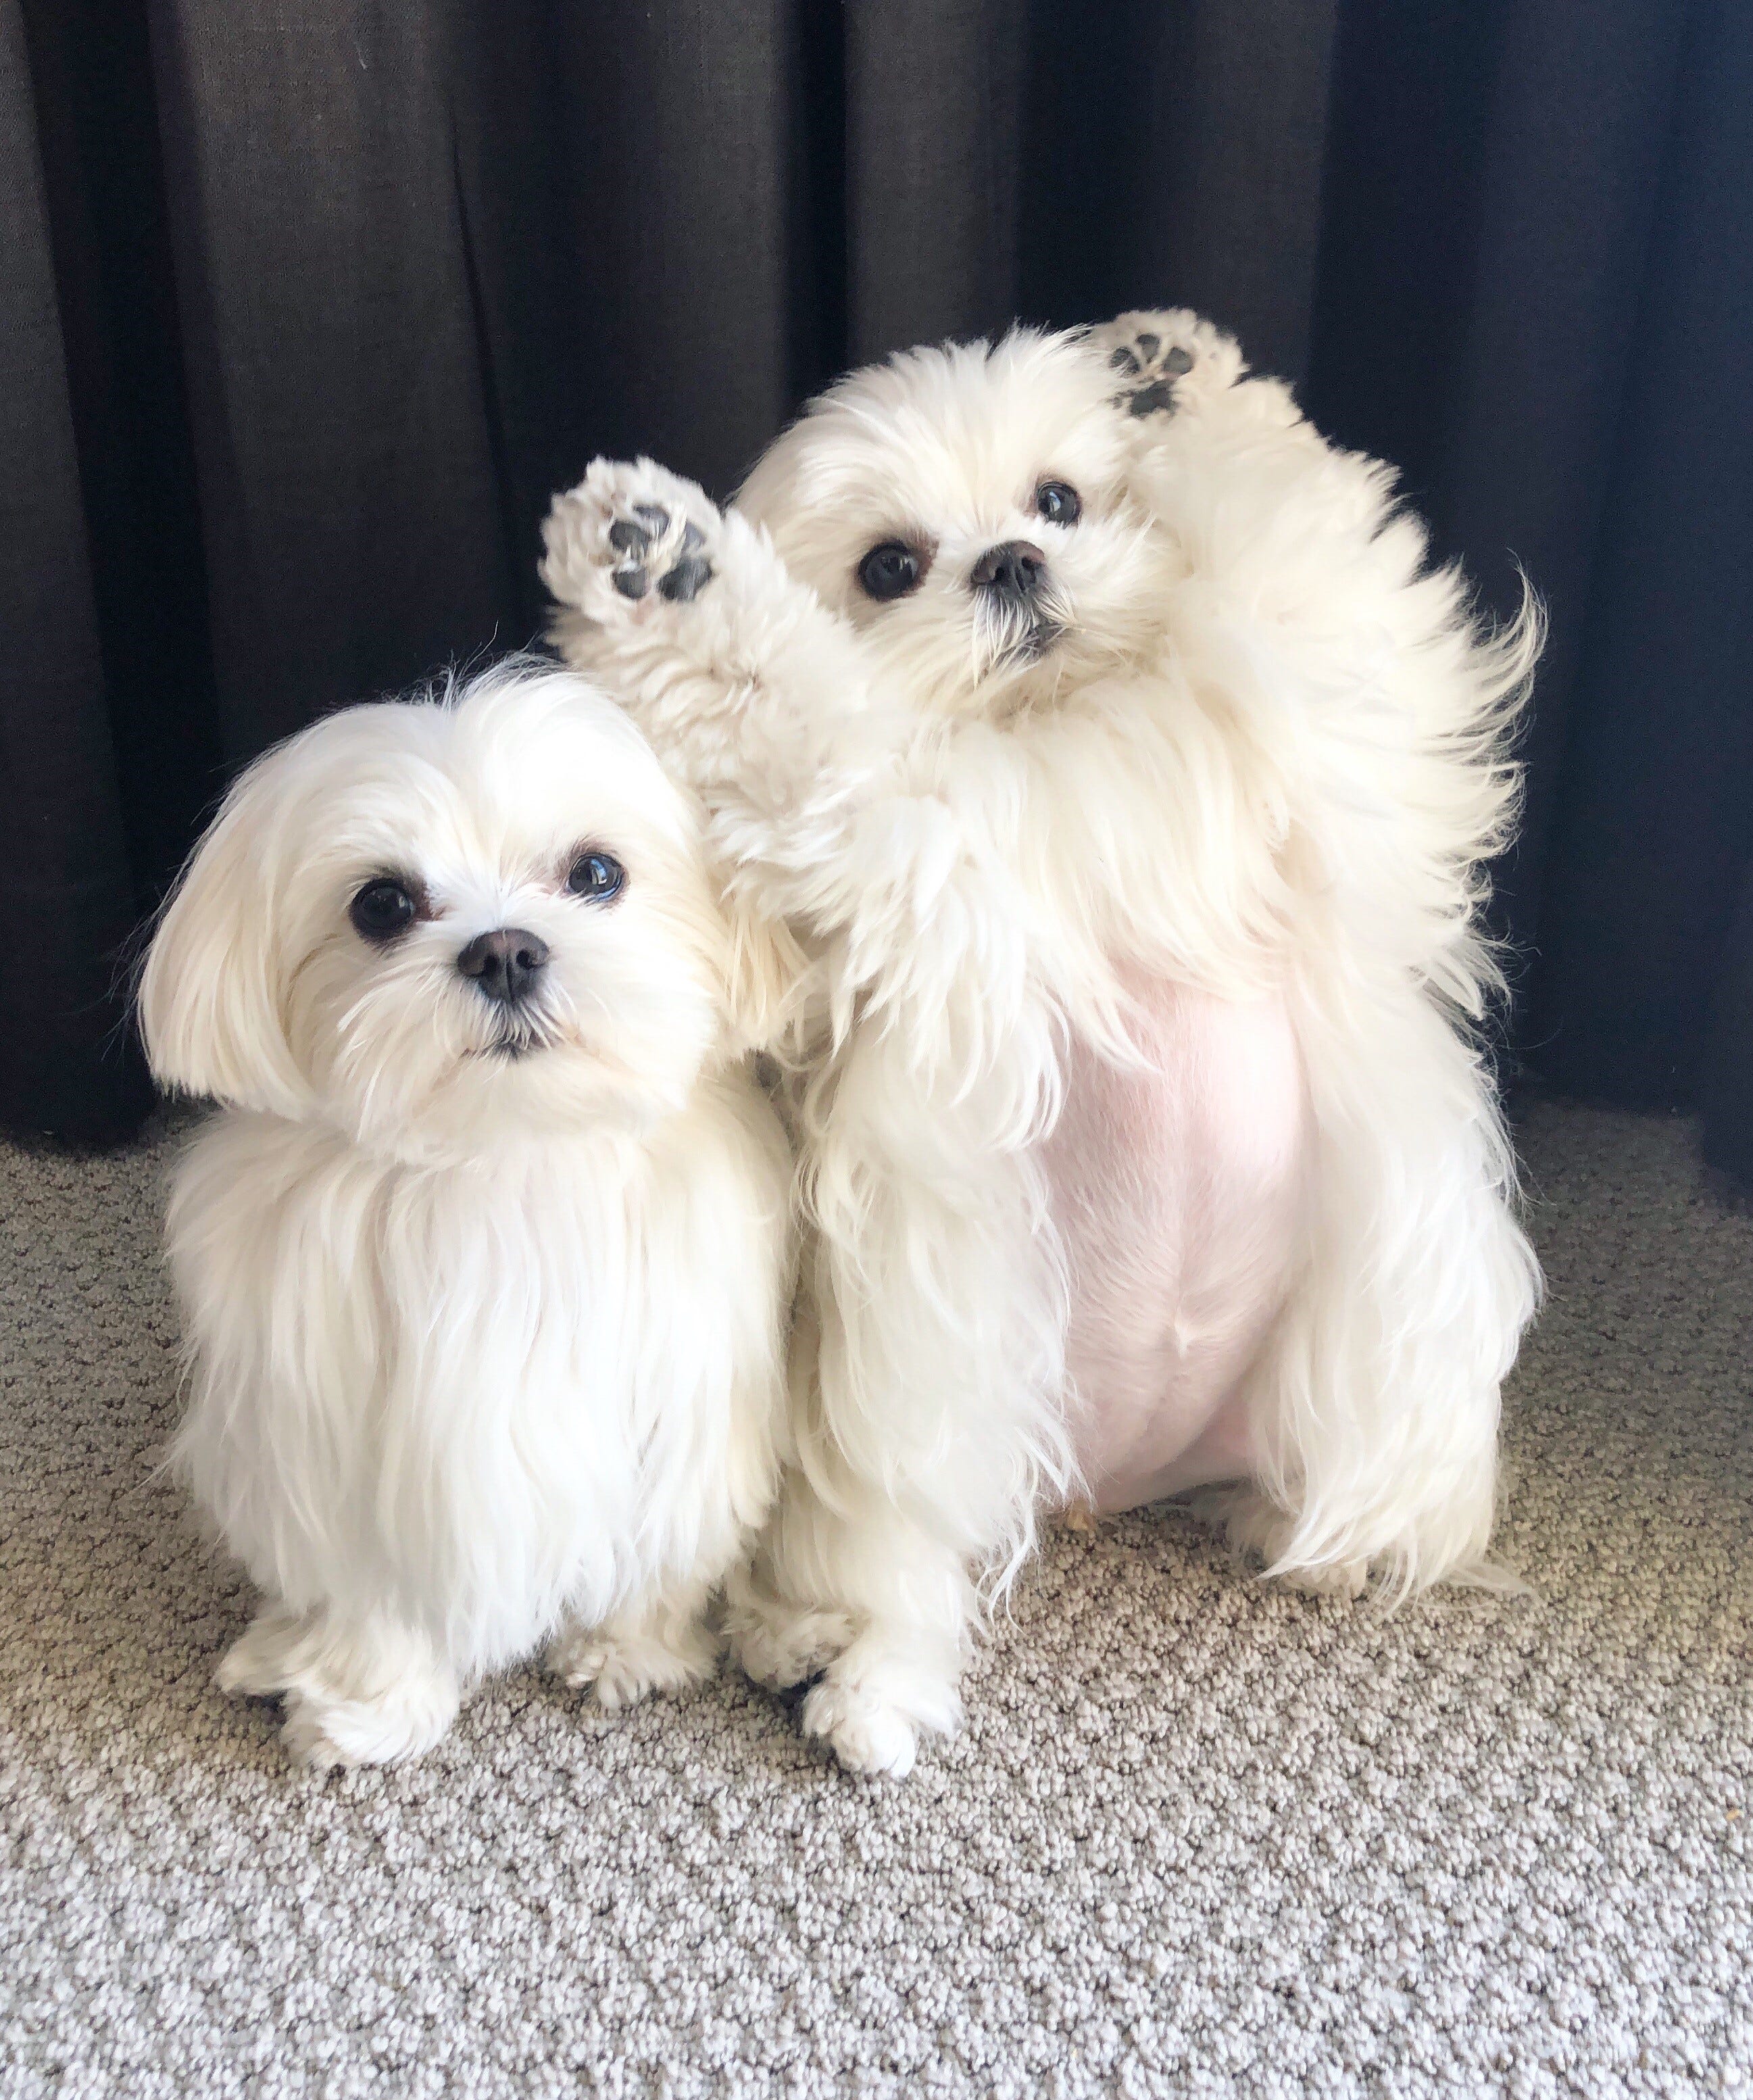 Coco aus Scottsdale (rechts) und sie "Schwester" Die Cici sind registrierte Therapiehunde, die wöchentlich im Phoenix Children's Hospital arbeiten.  Sie haben über 270.000 Instagram-Follower mit ihrem Konto @cocothemaltesedog angezogen "dicke Bäuche" und dumme Posen.